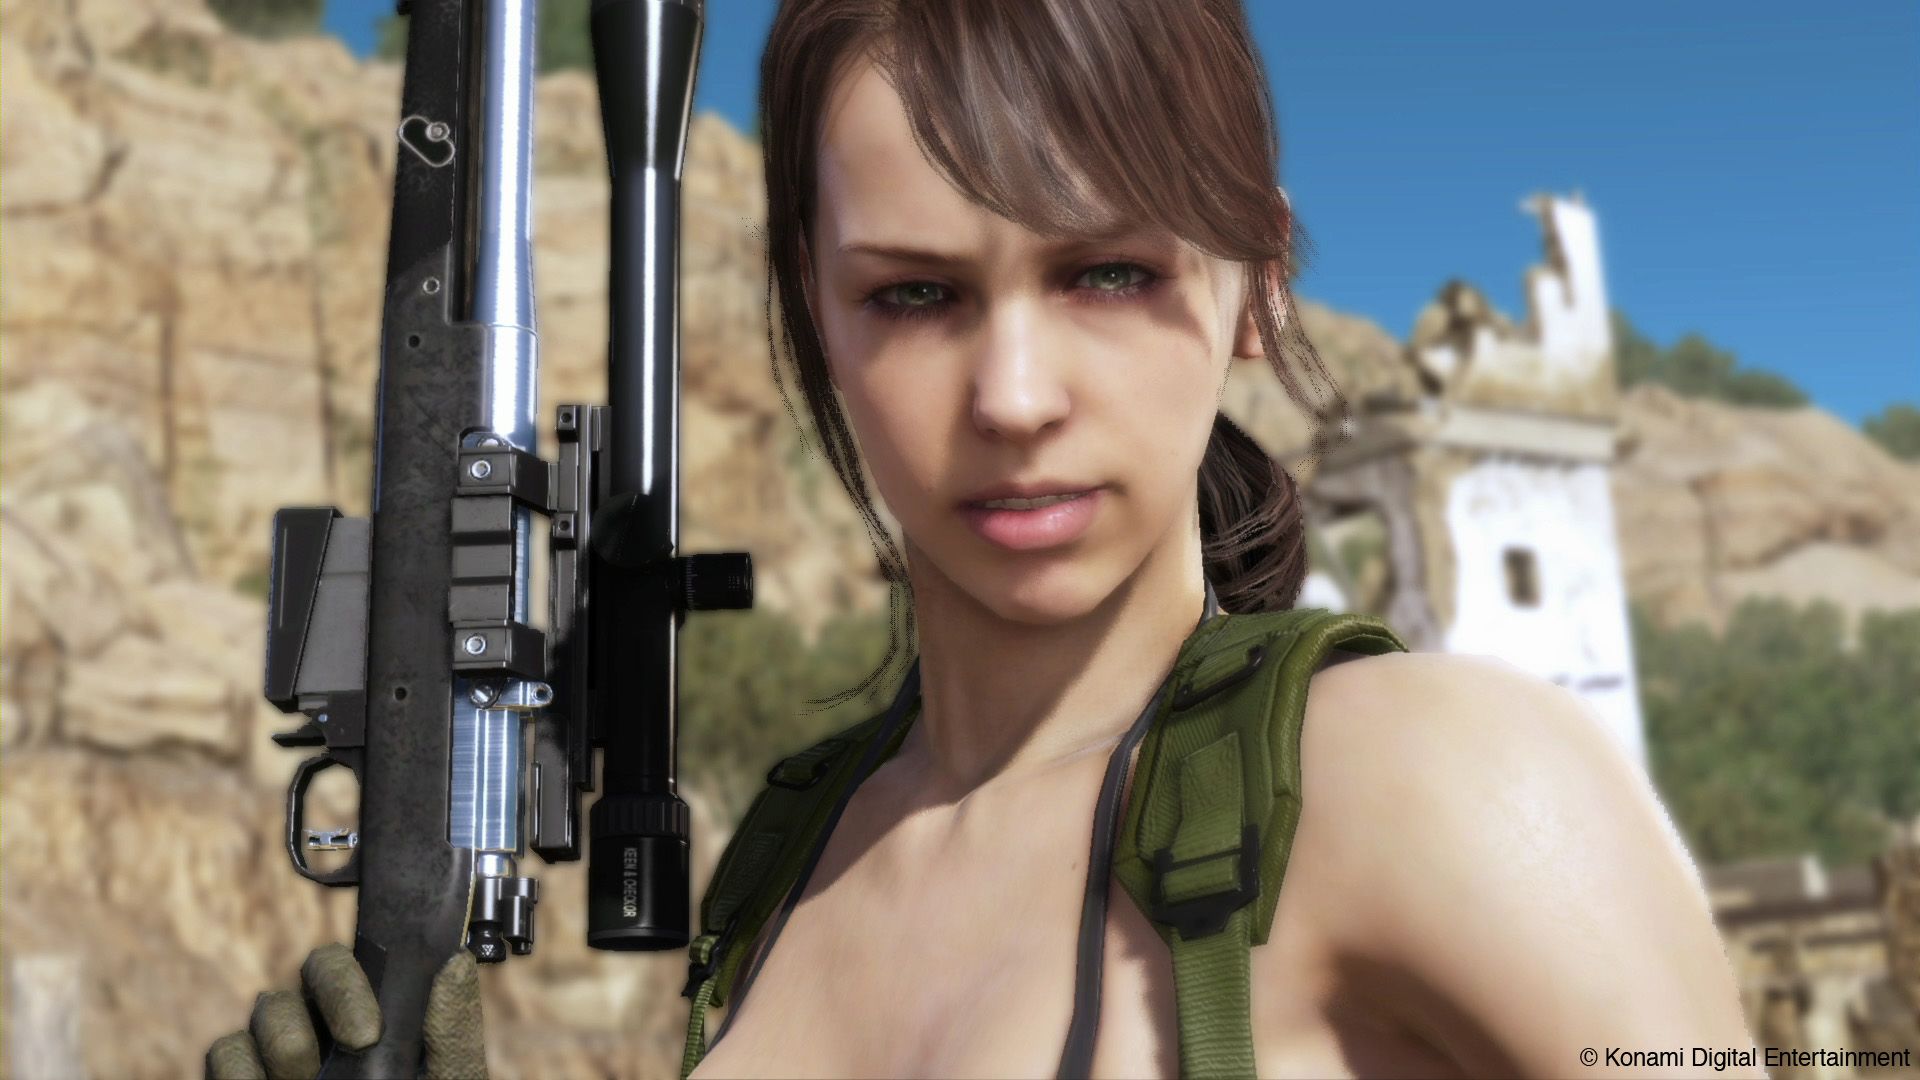 Neues Gameplay-Video zu Metal Gear Solid 5 zeigt Mission bei Tageslicht